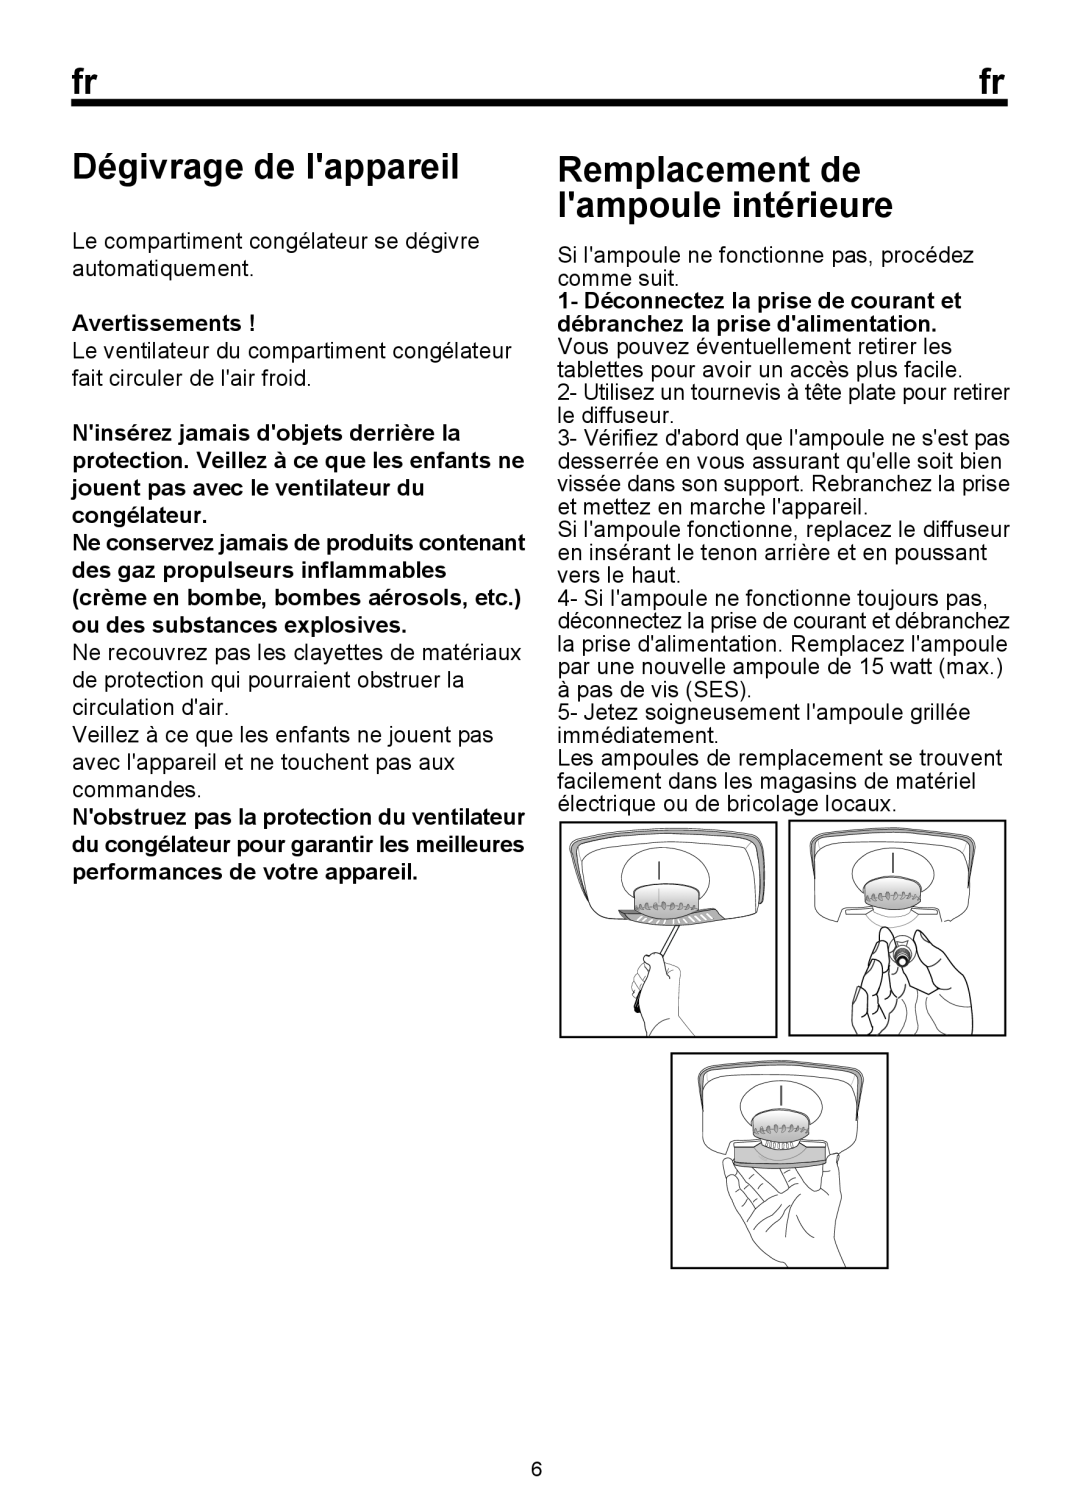 Blomberg BRFB 0900, BRFBT 0900 manual Remplacement de lampoule intérieure, Avertissements, Dégivrage de lappareil 